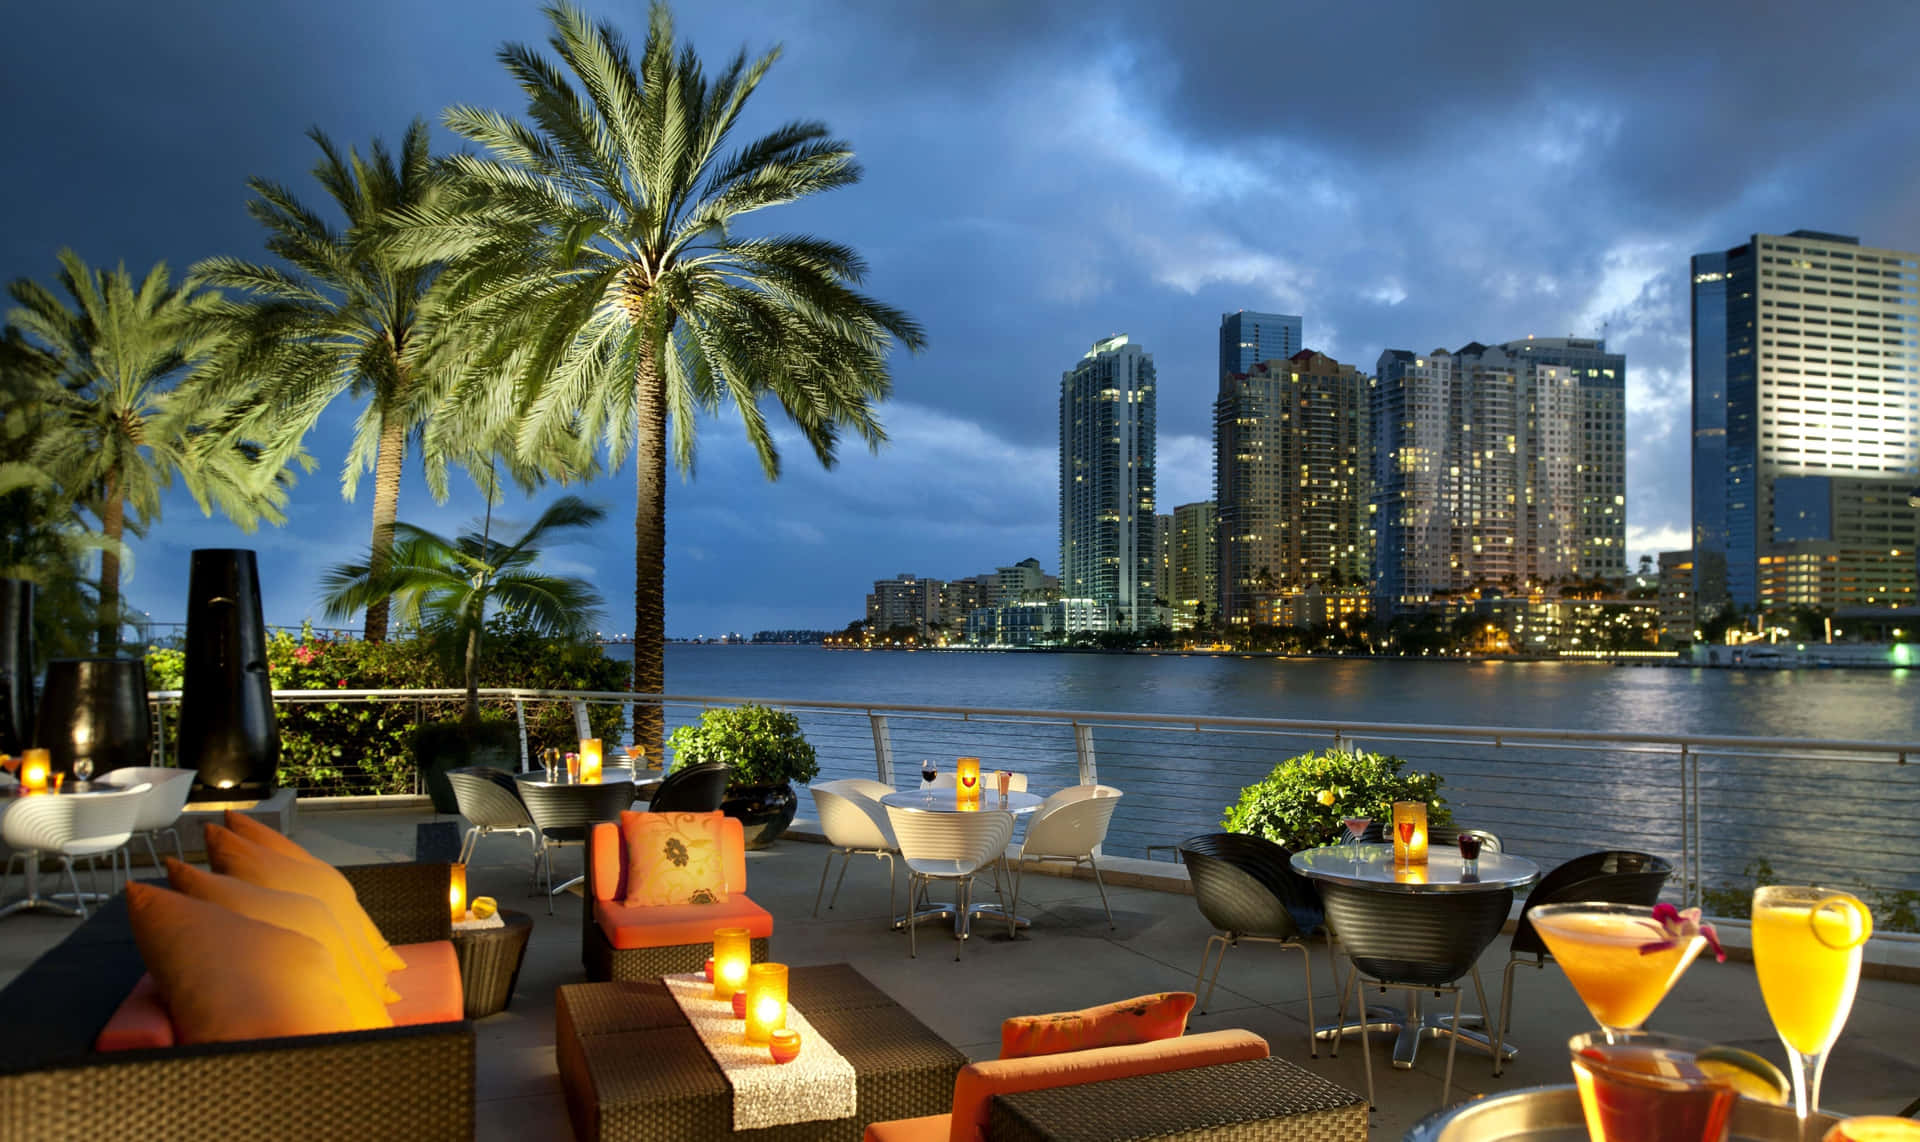 Lucibrillanti E Skyline Urbani - Benvenuti A Miami!